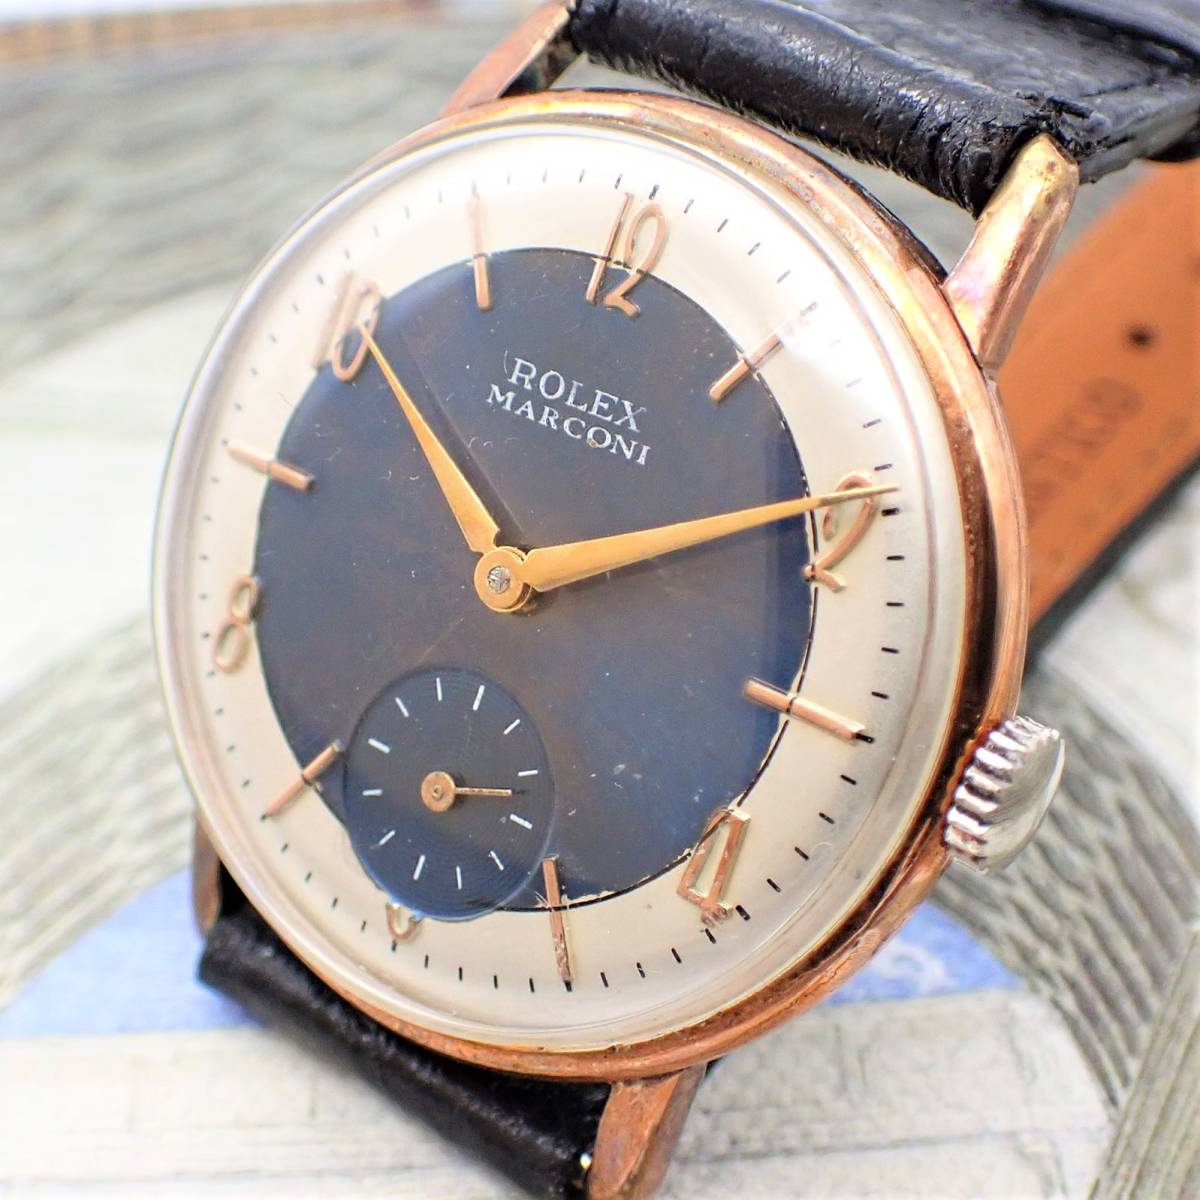 ROLEX ロレックス MARCONI マルコーニ 18KGP 1920 サイズ 34ｍｍ アンティーク・ウォッチ メンズ 腕時計 手巻き #206_画像1